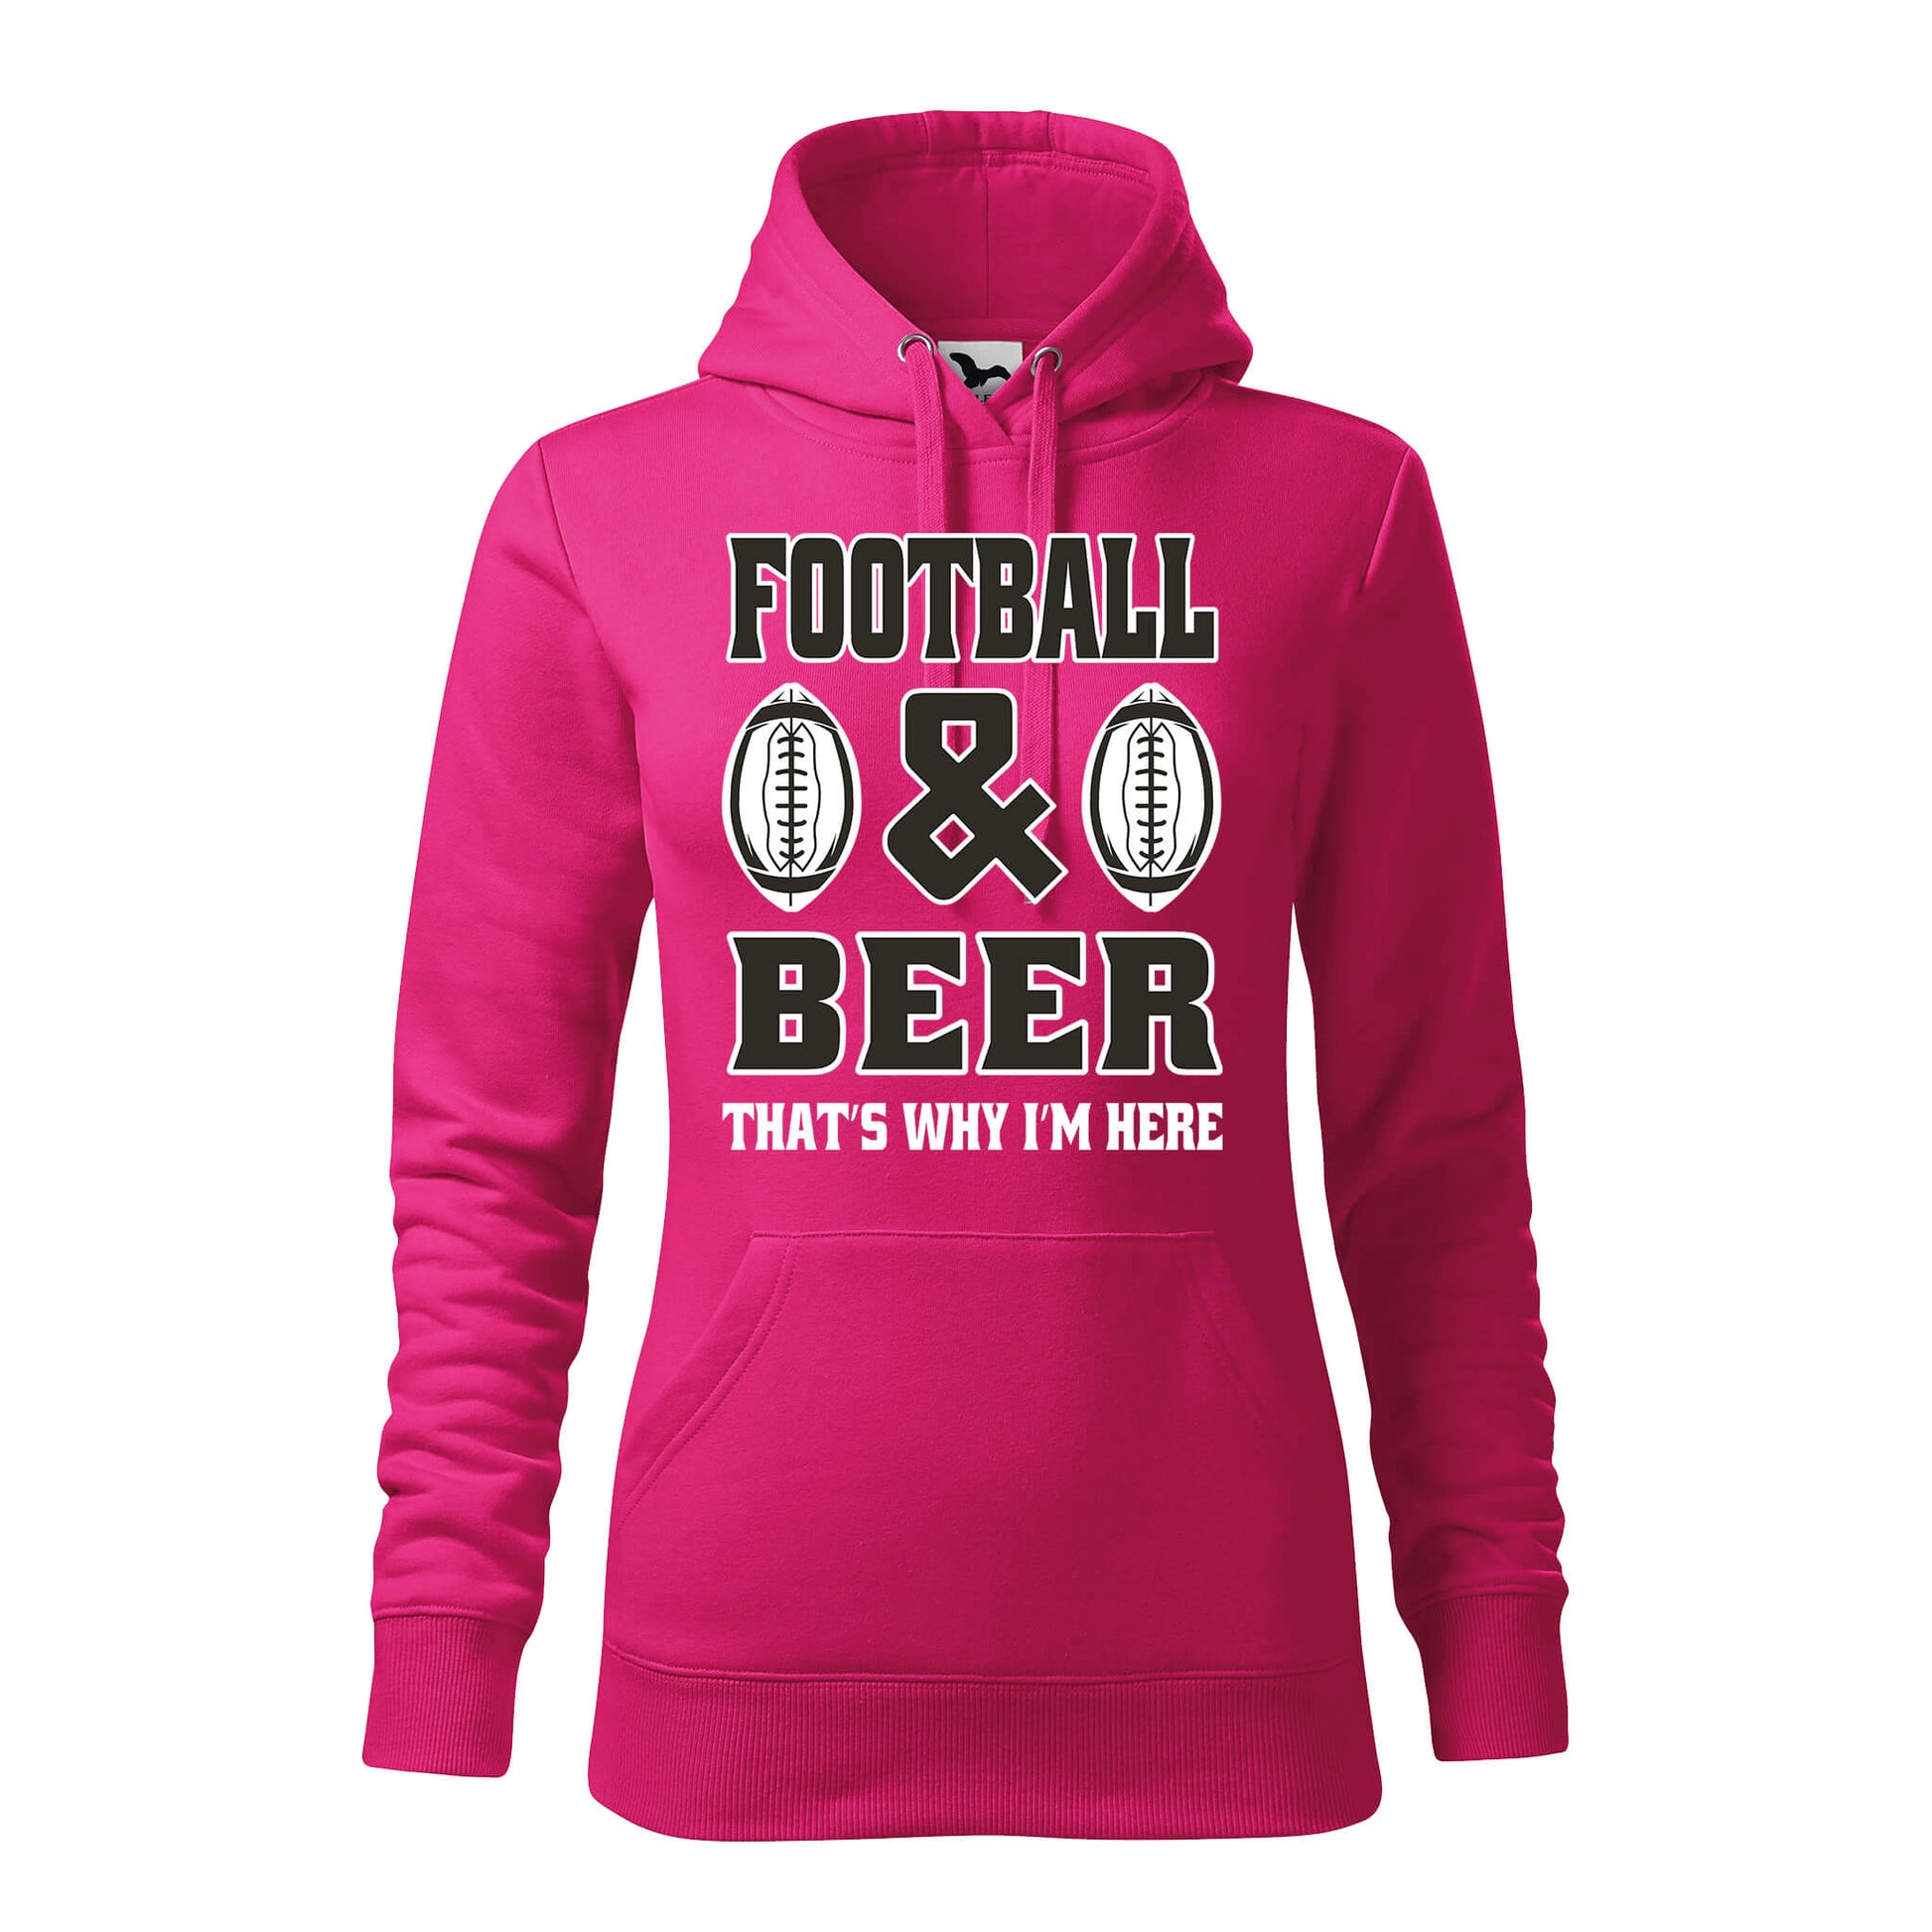 Football and beer hoodie - rvdesignprint